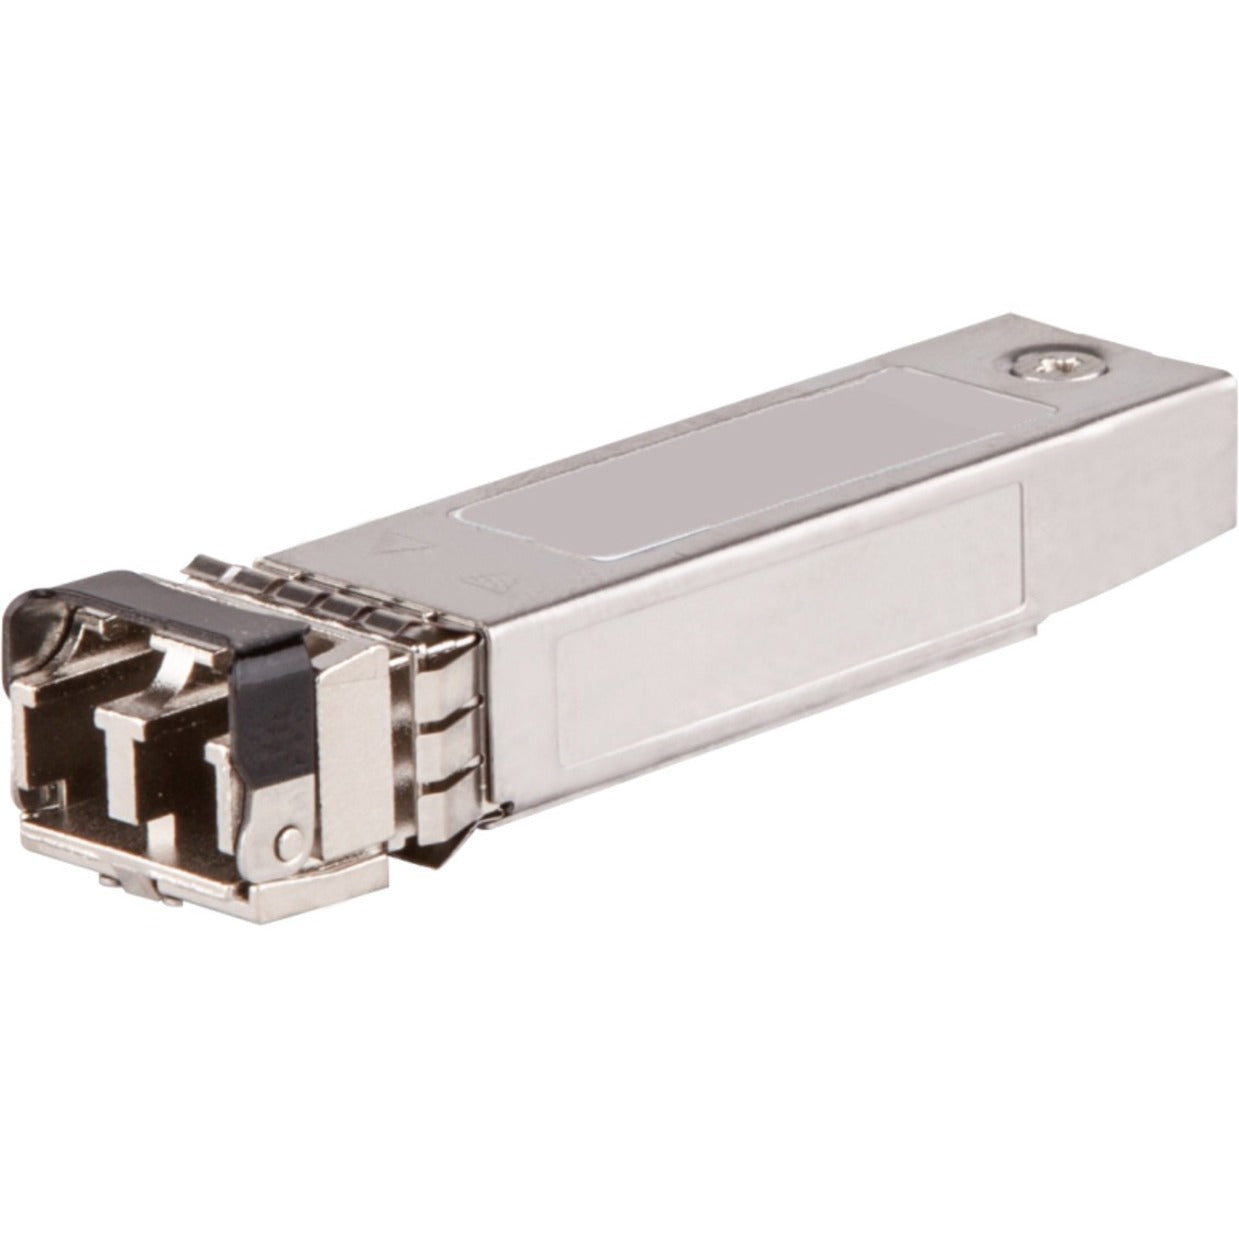 HPE J4858D 1G SFP LC SX 500m OM2 MMF Transceiver, Gigabit Ethernet, Multi-mode, Optical Fiber